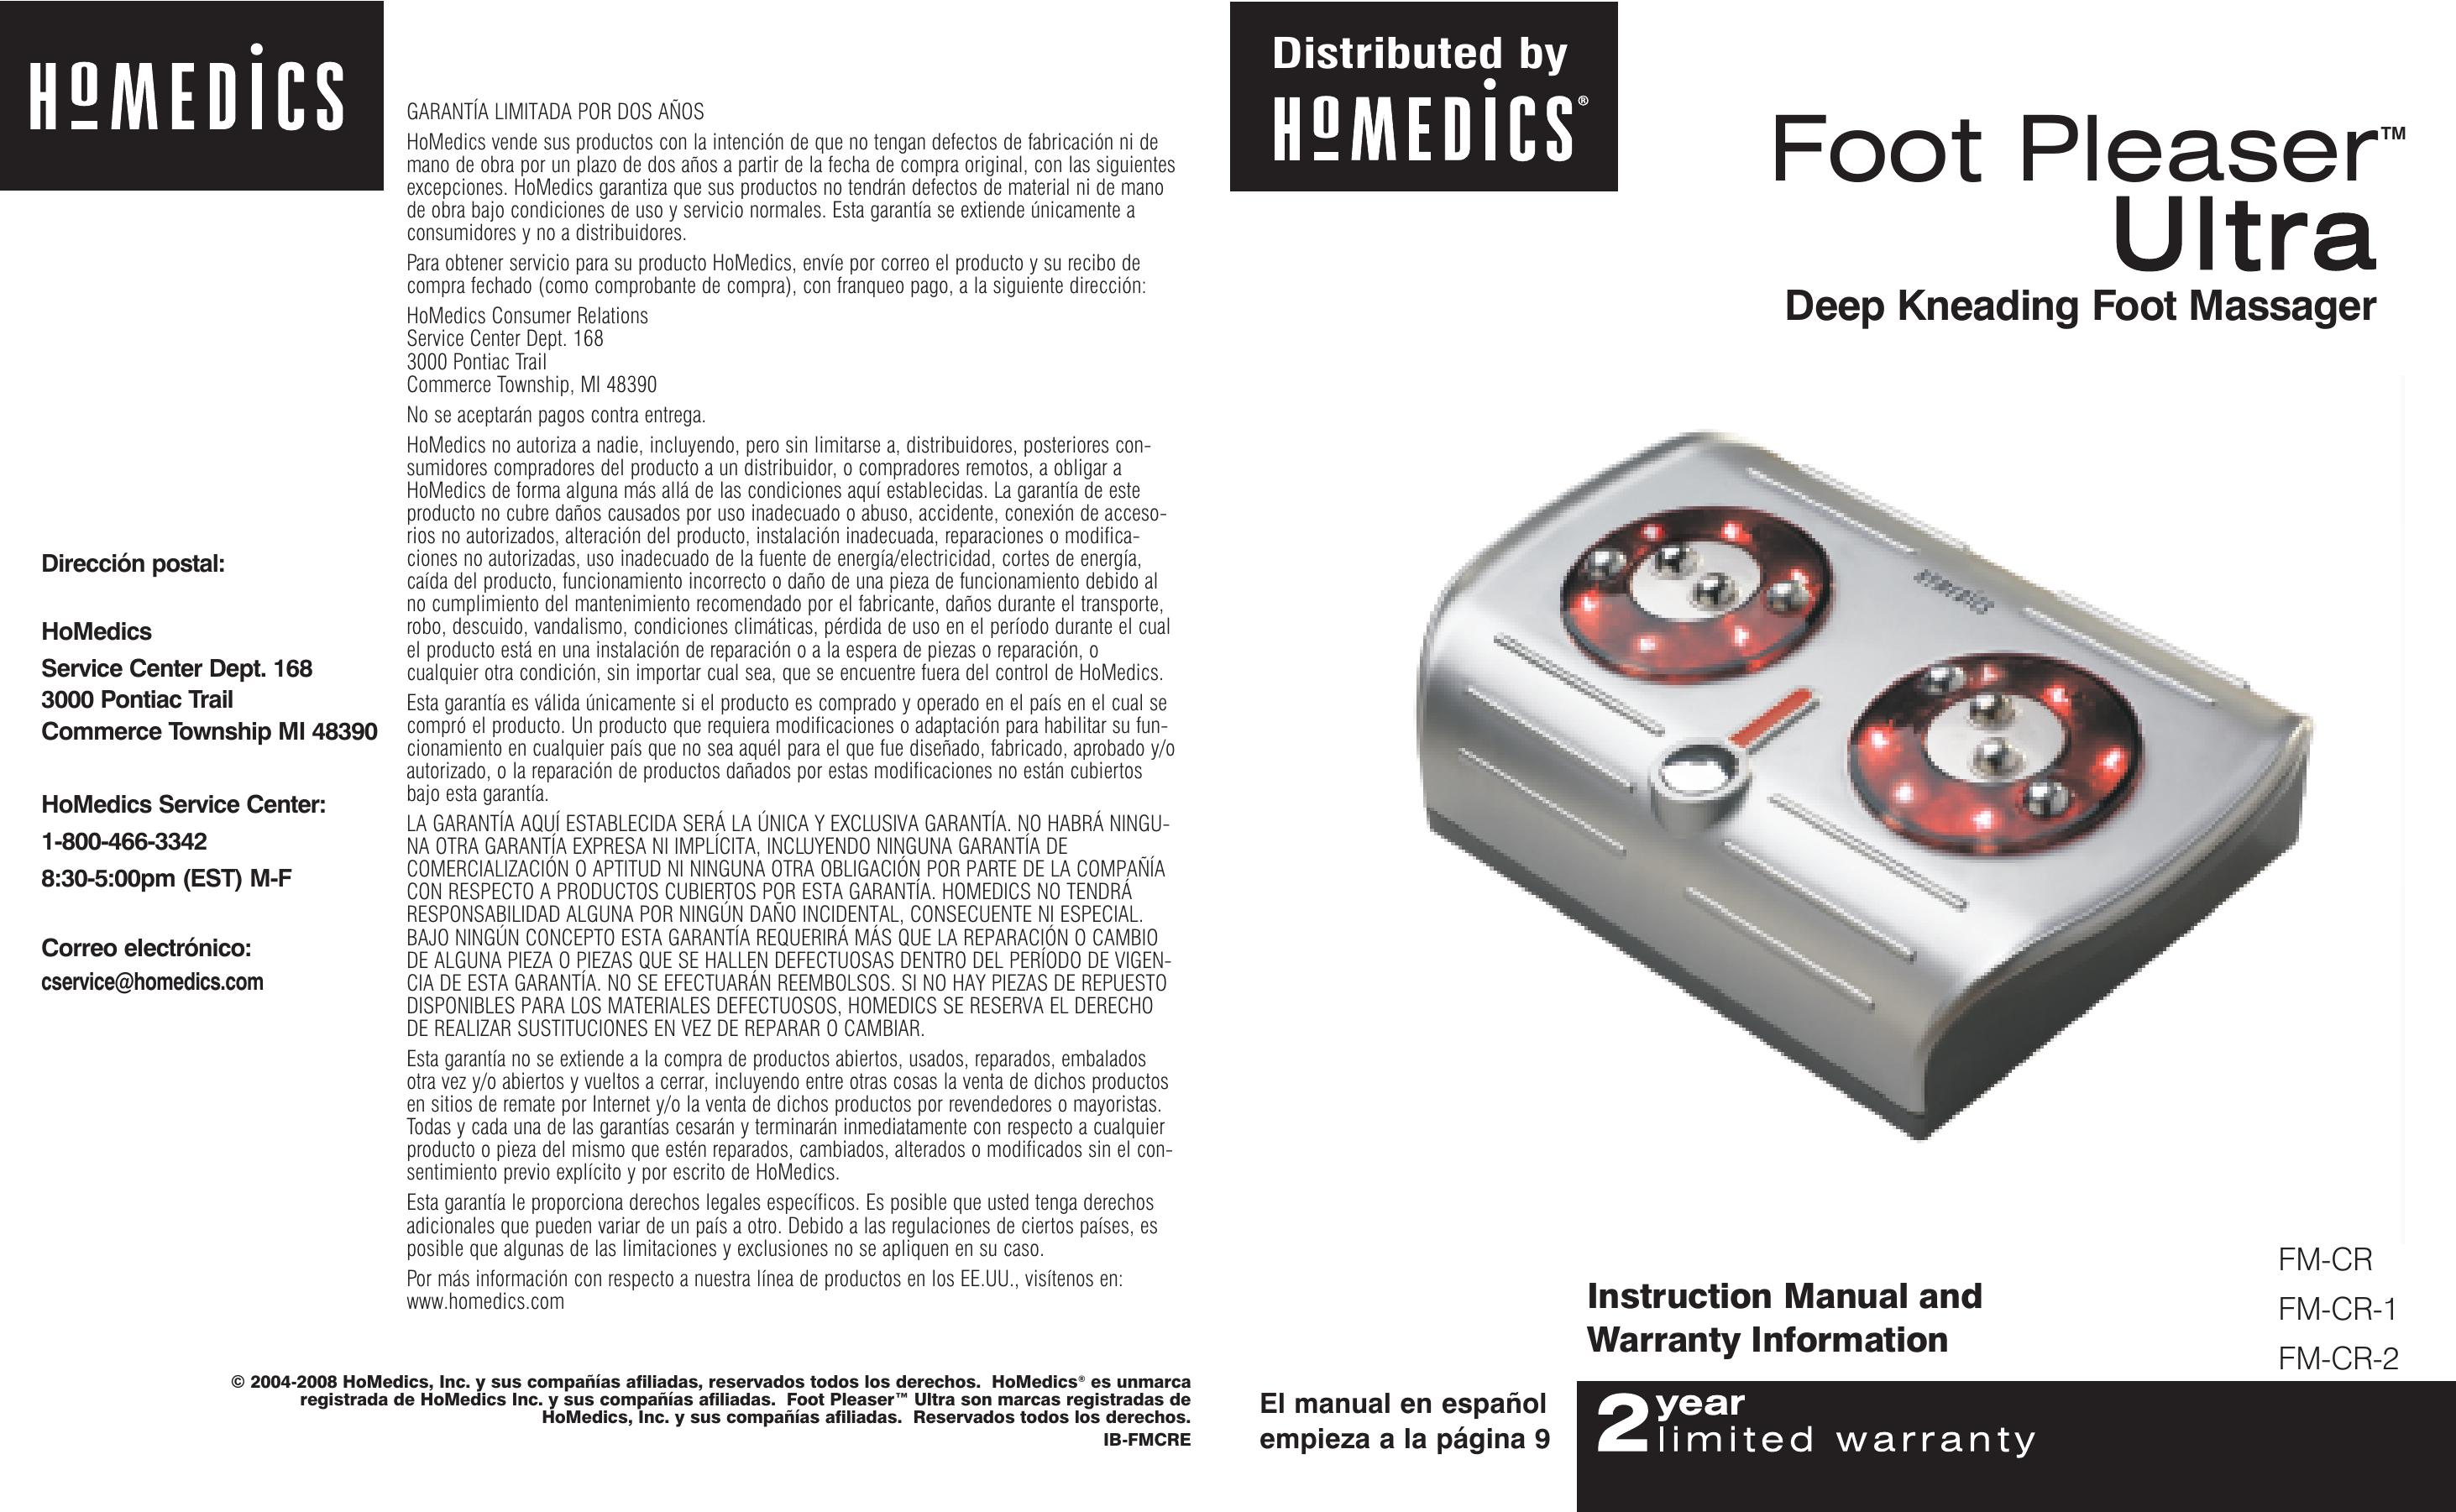 HoMedics FM-CR-2 Pedicure Spa User Manual